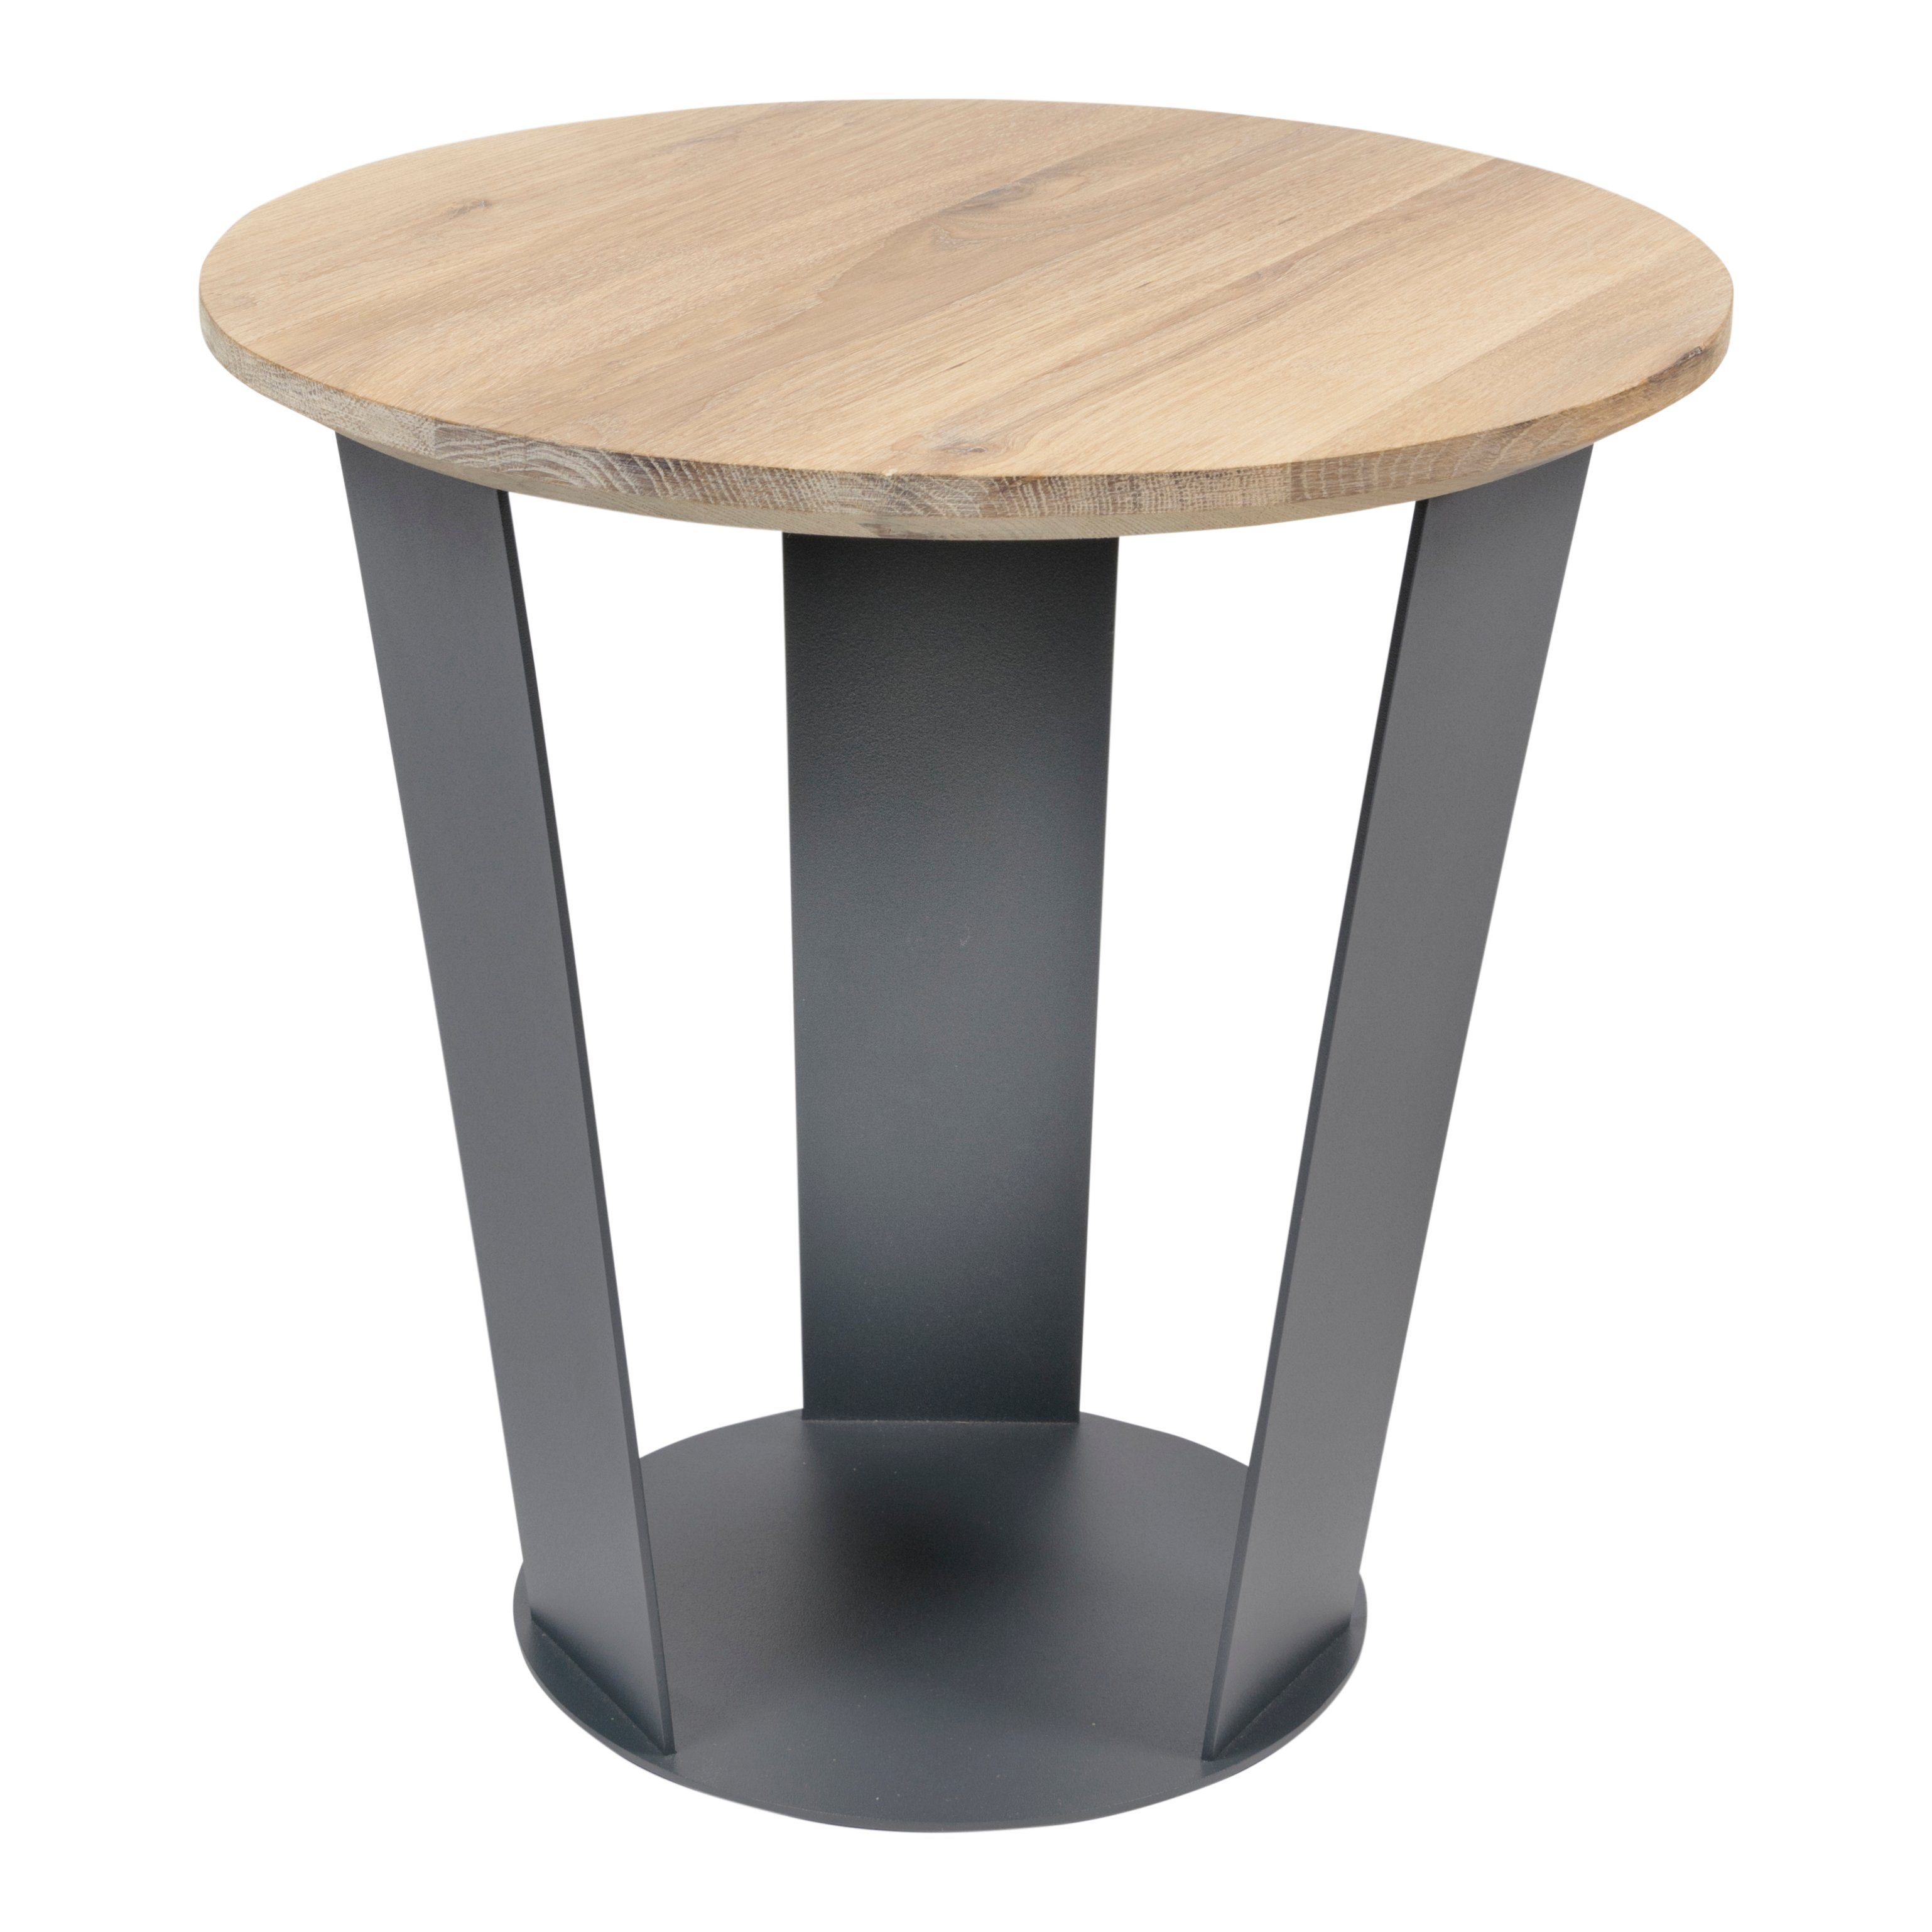 Torna Design Furniture - Beistelltisch Beistelltisch Anthracite SHINE 40 38x35x38cm Torna